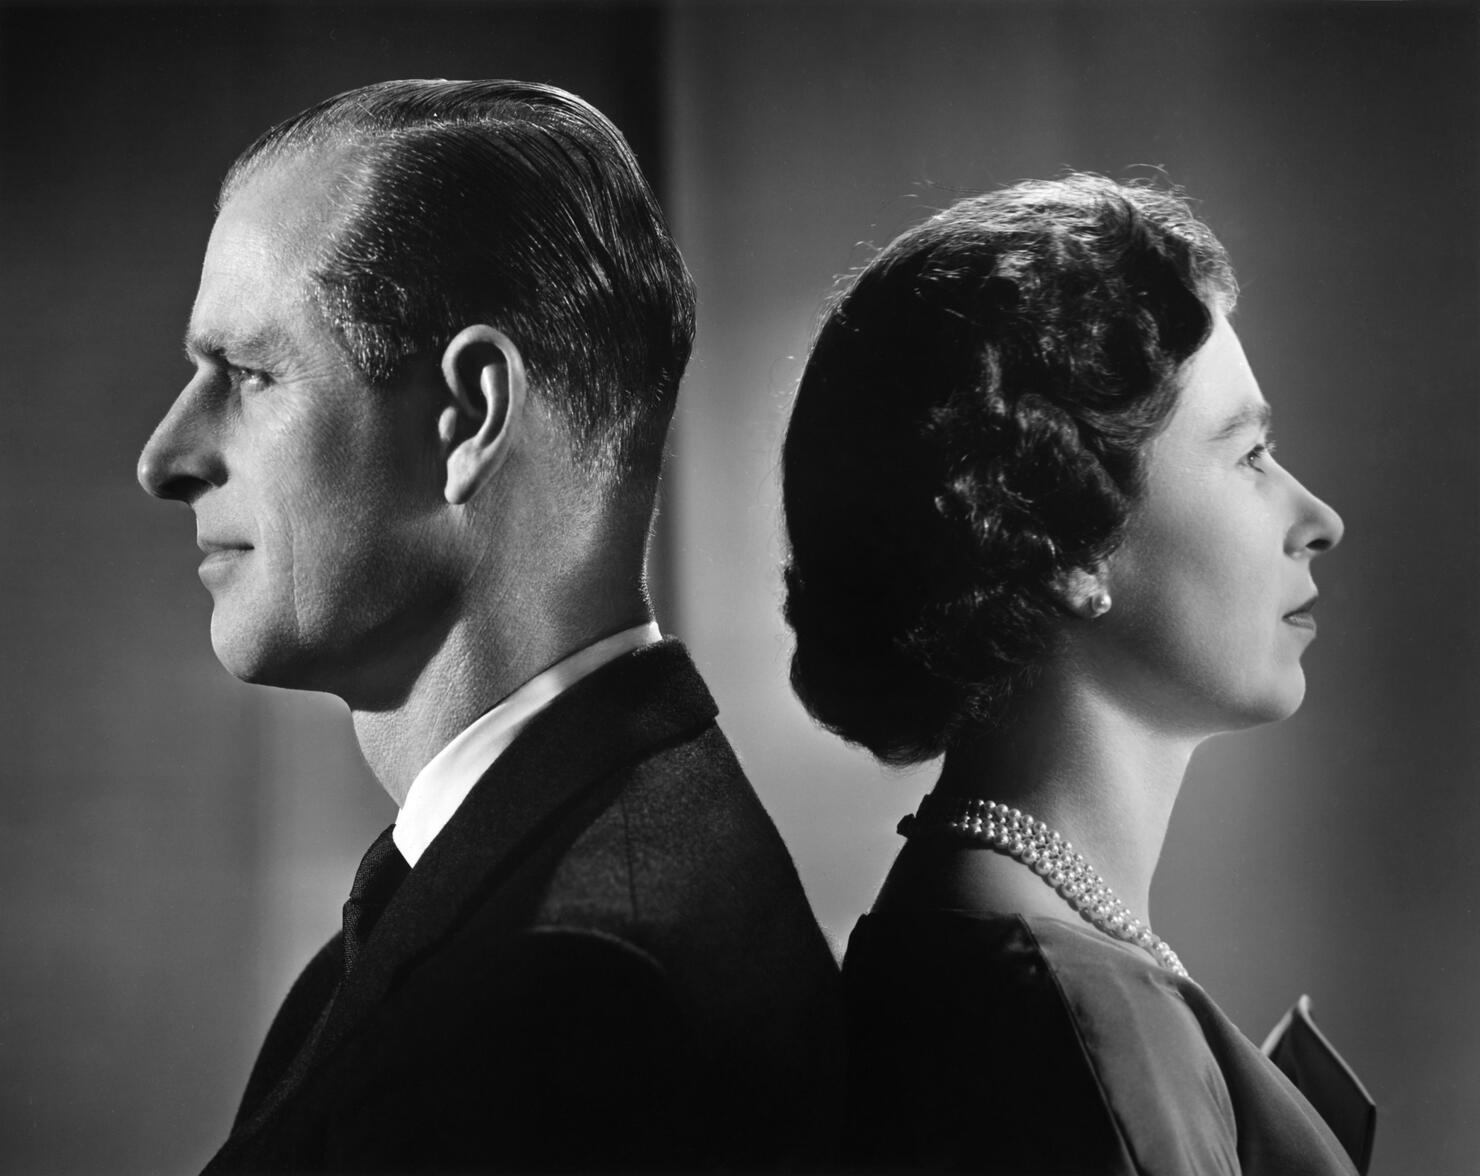 Queen Elizabeth II And Prince Philip Portrait